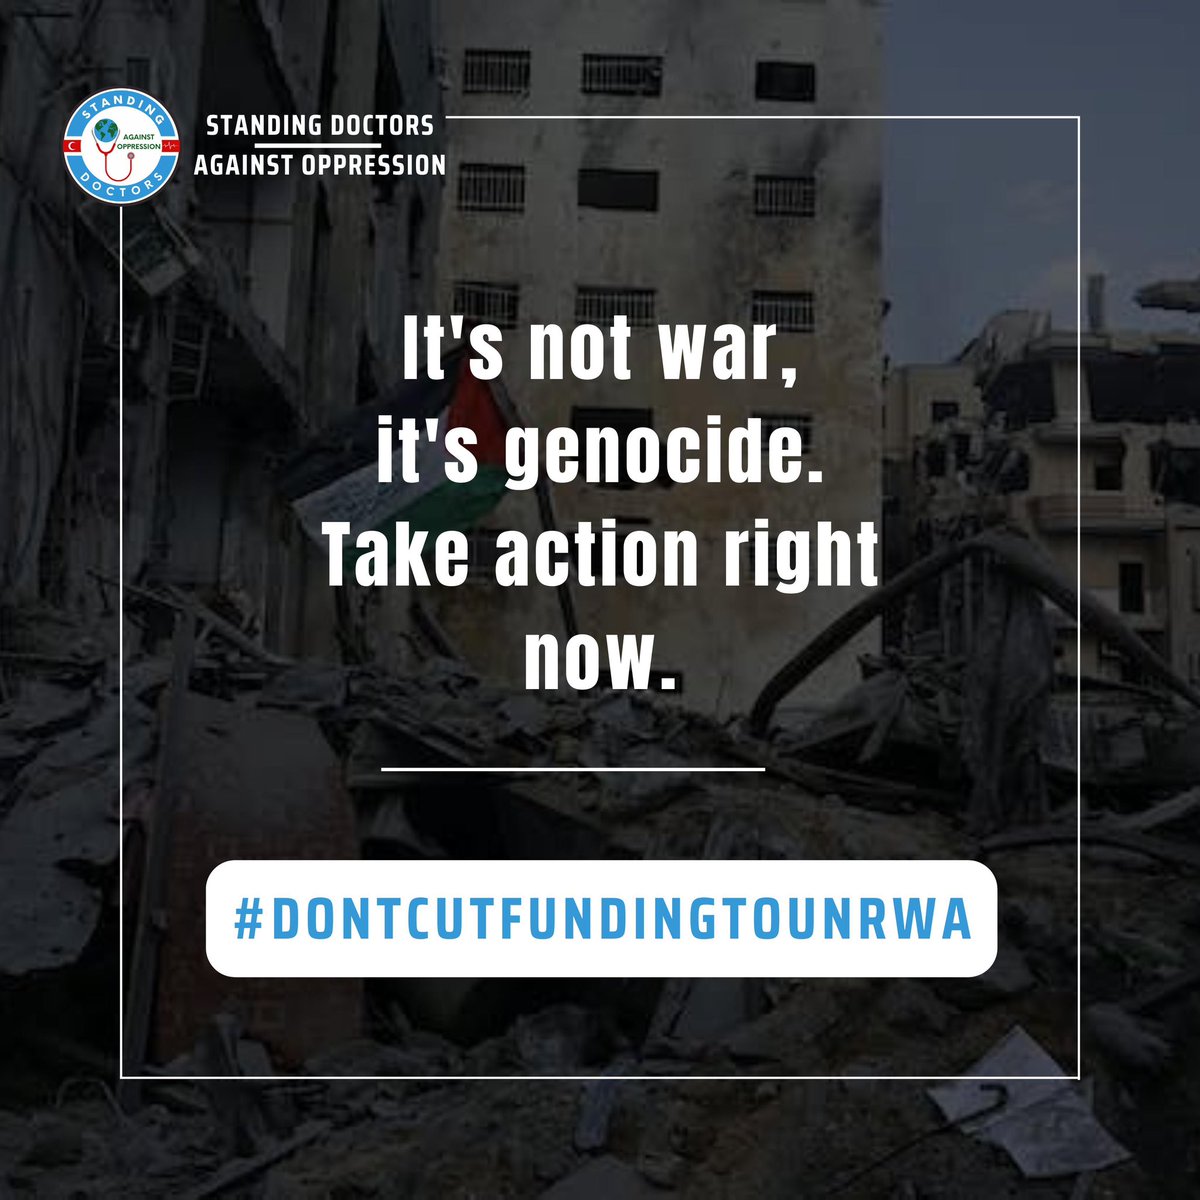 Enough is enough! #DONTCUTFUNDINGTOUNRWA